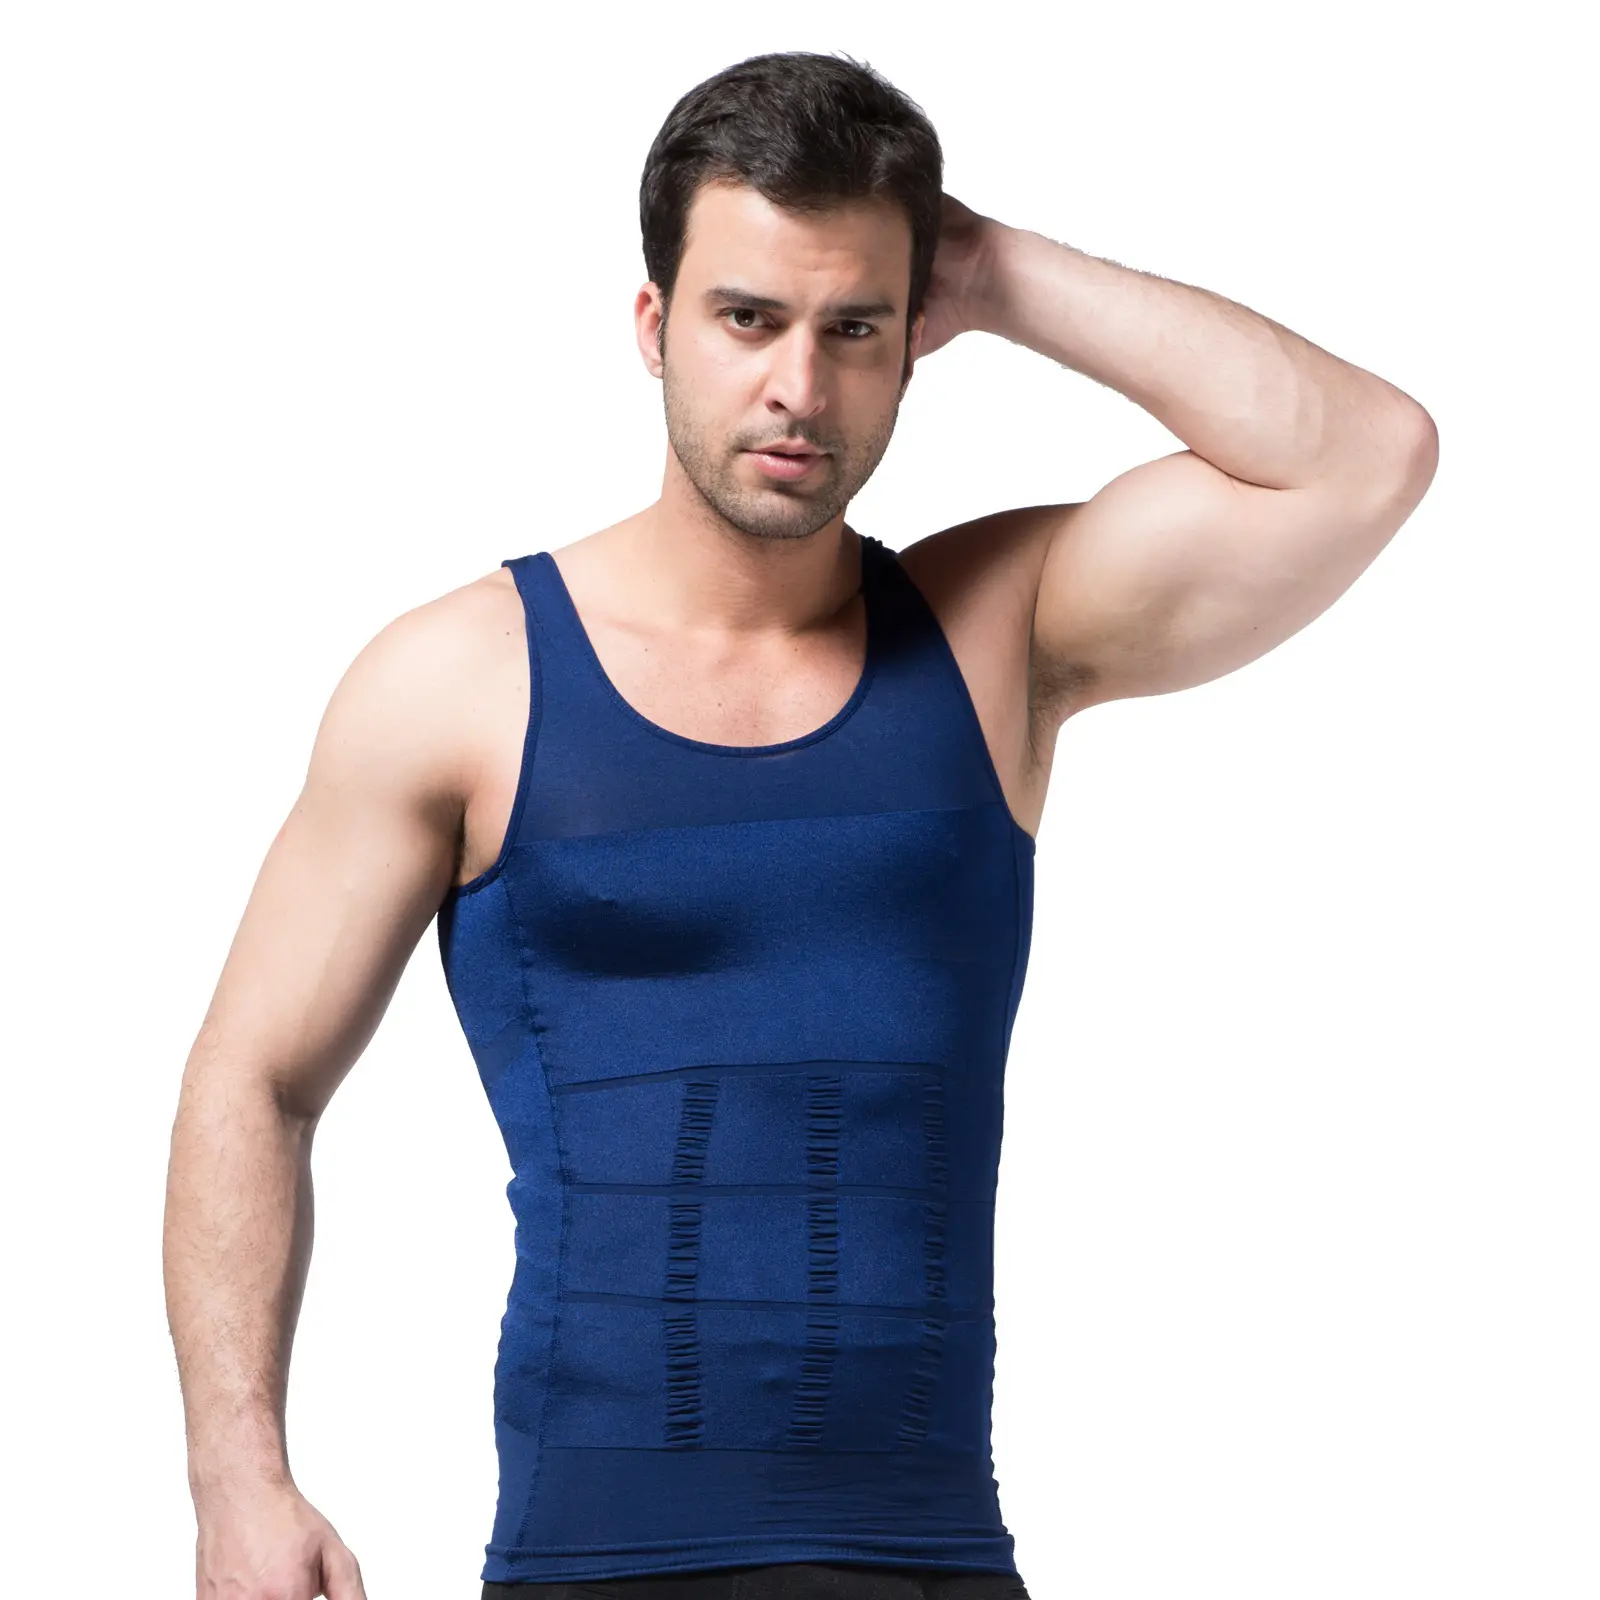 Men's Slimming Body Shaper Vest Shirt Abs Abdomen crop top vest fitness wear underwear muscle sleeveless T-shirt body shaper